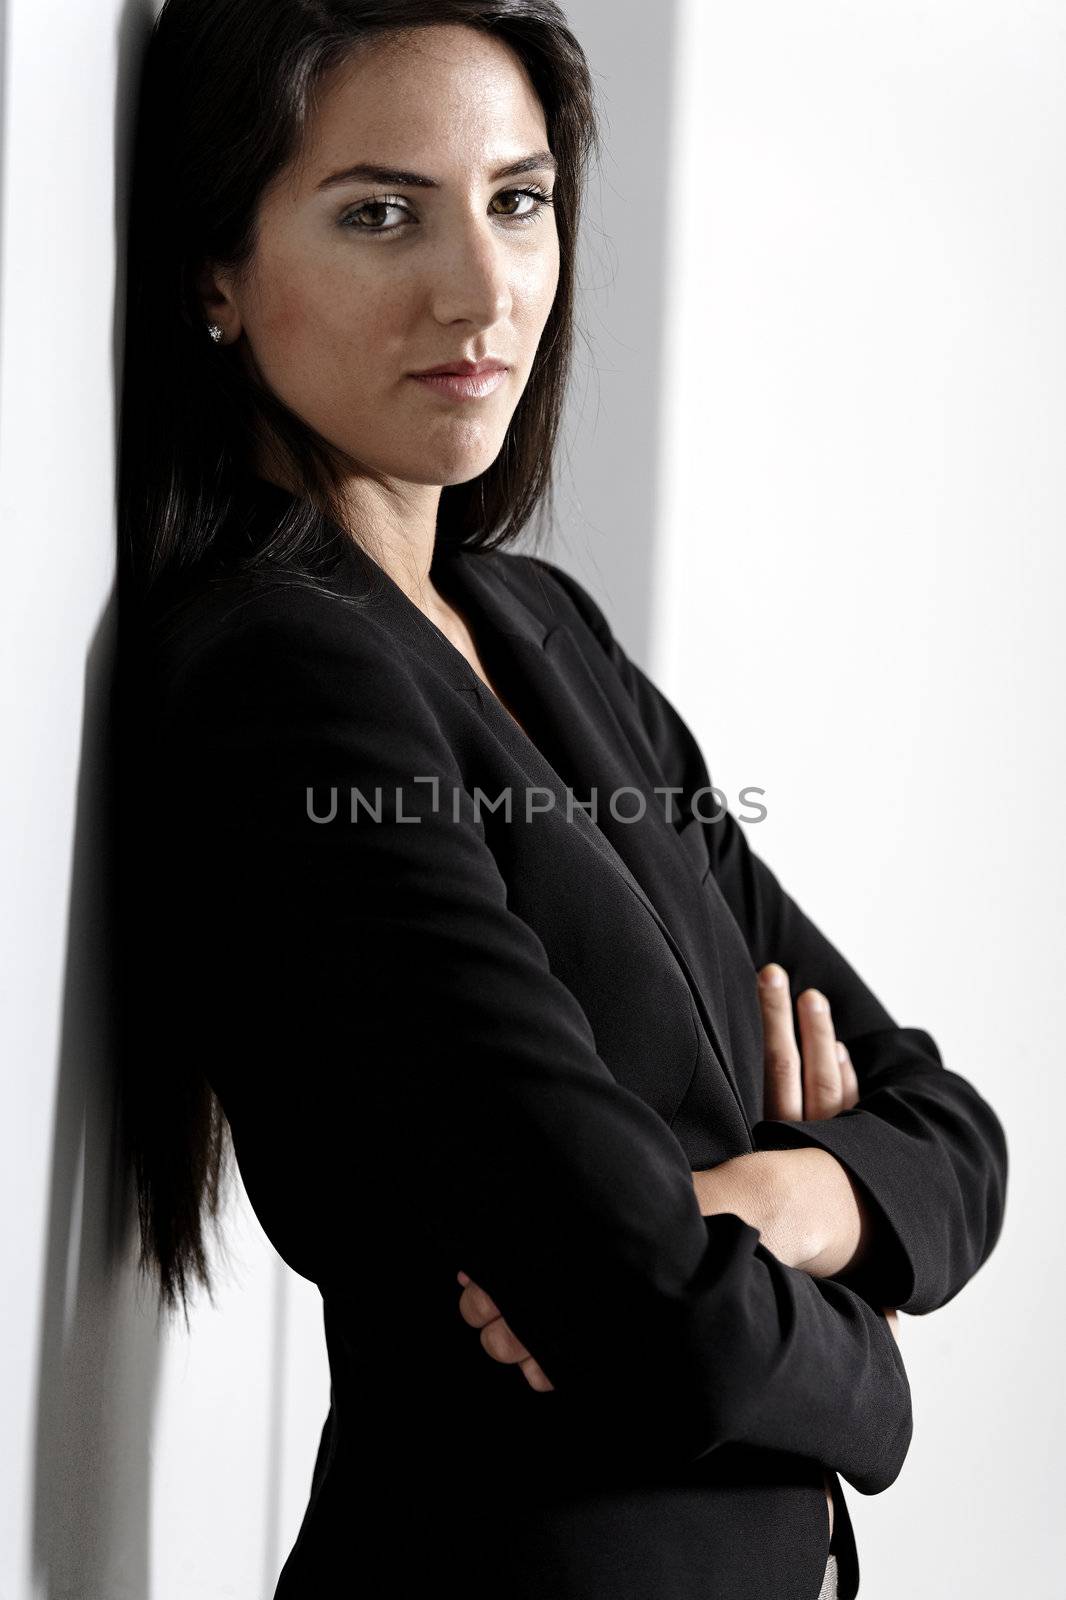 Woman in smart business suit by studiofi